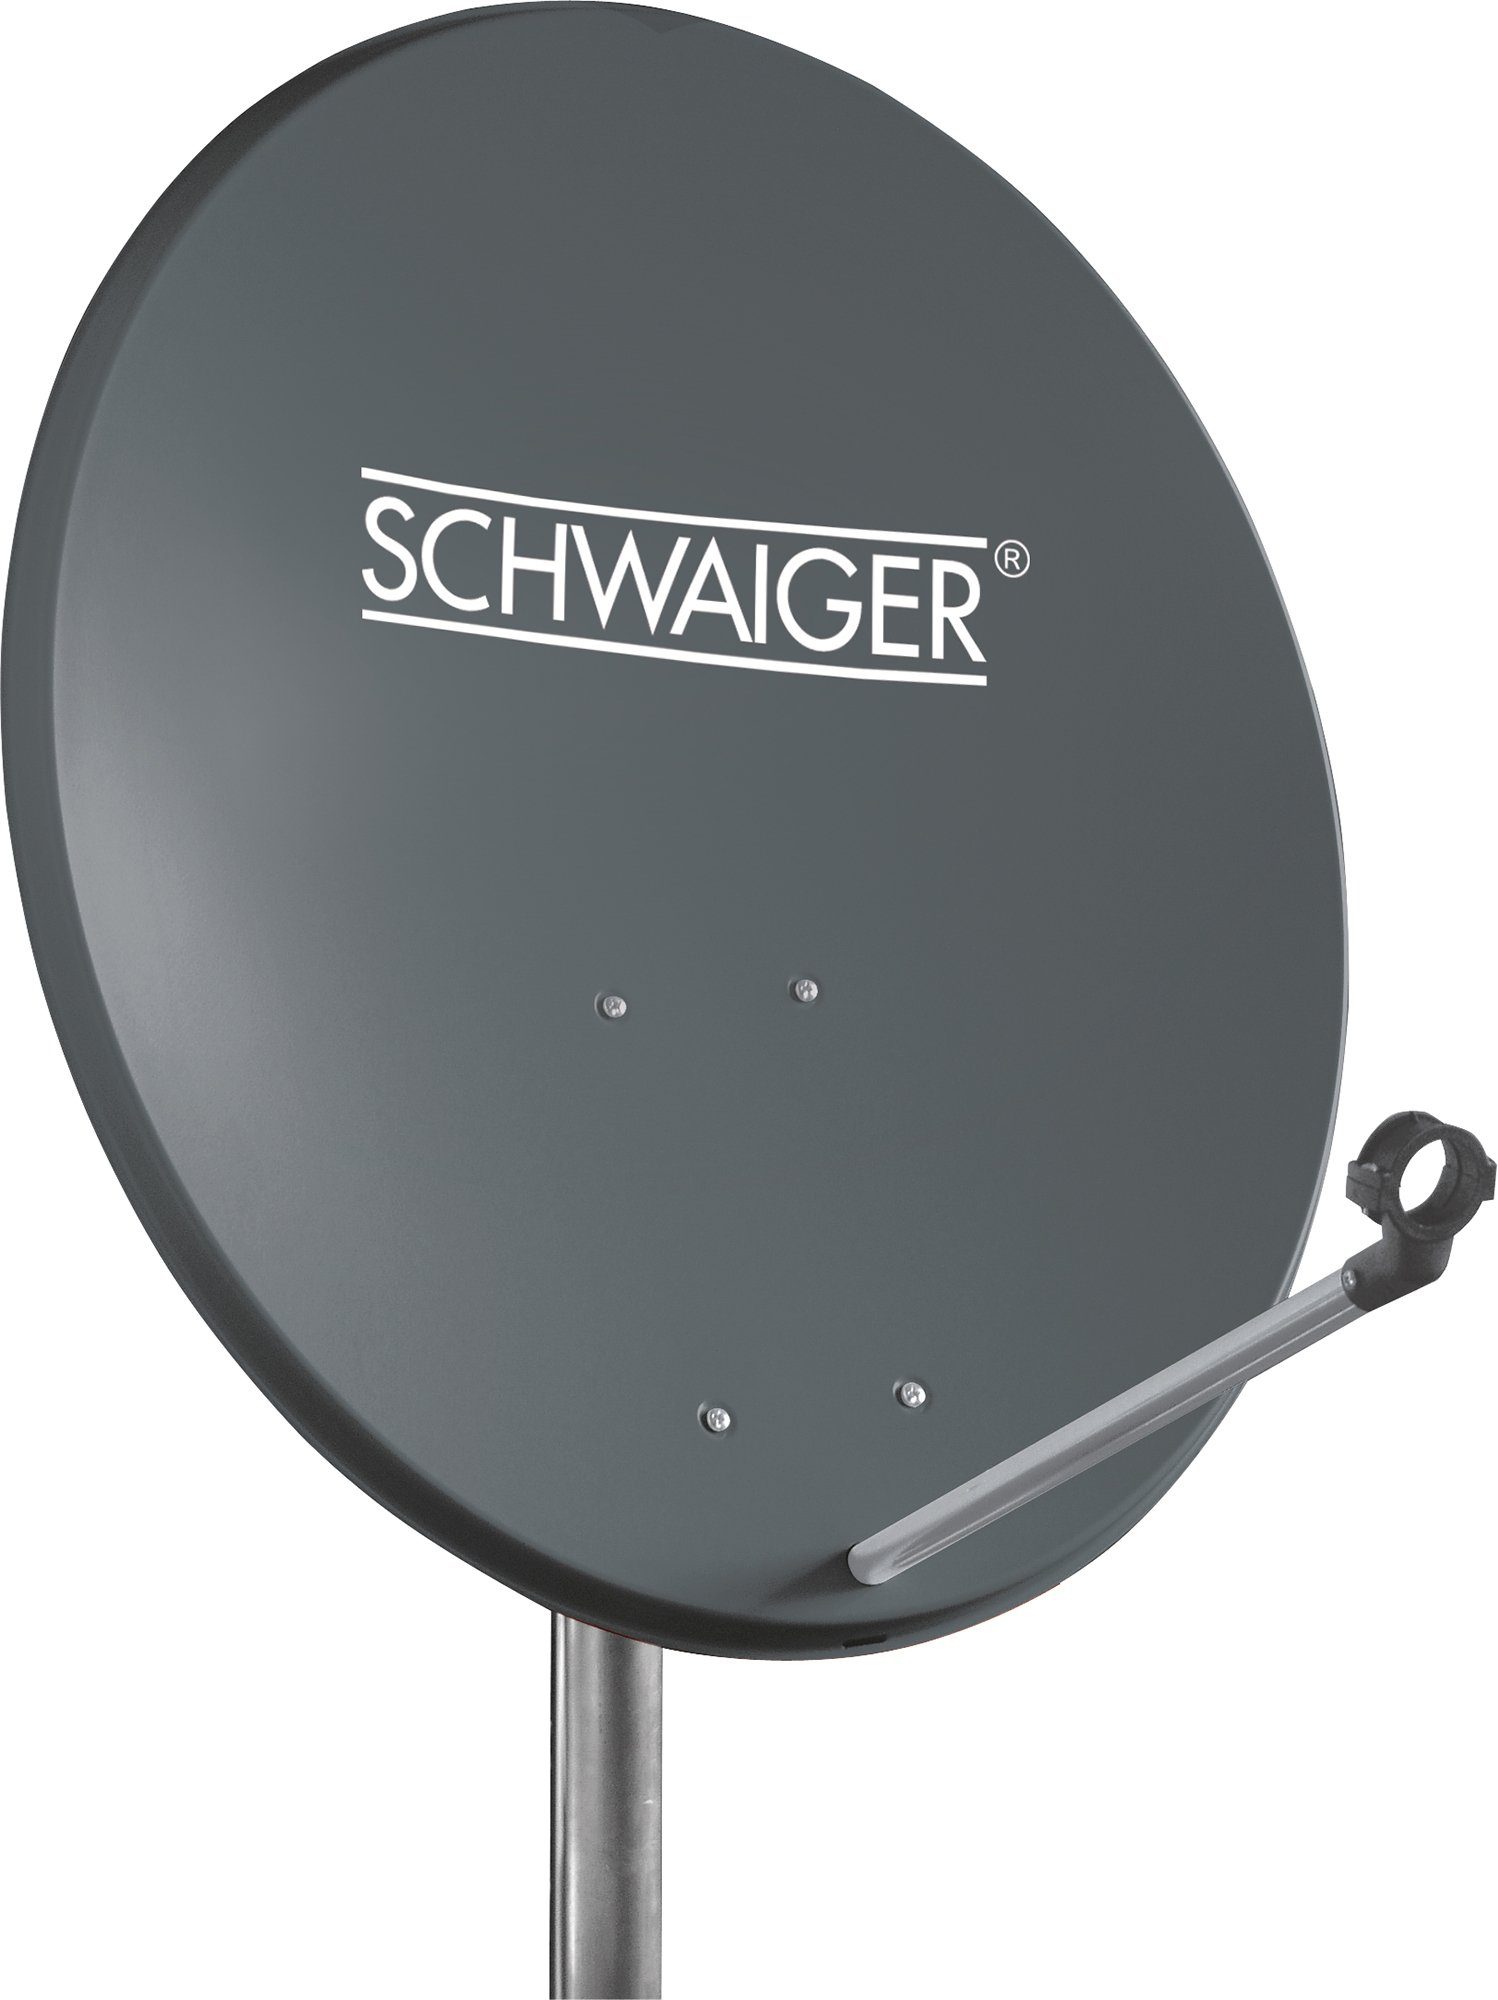 Schwaiger SPI550.1 Sat-Spiegel (55 cm, Stahl, anthrazit)